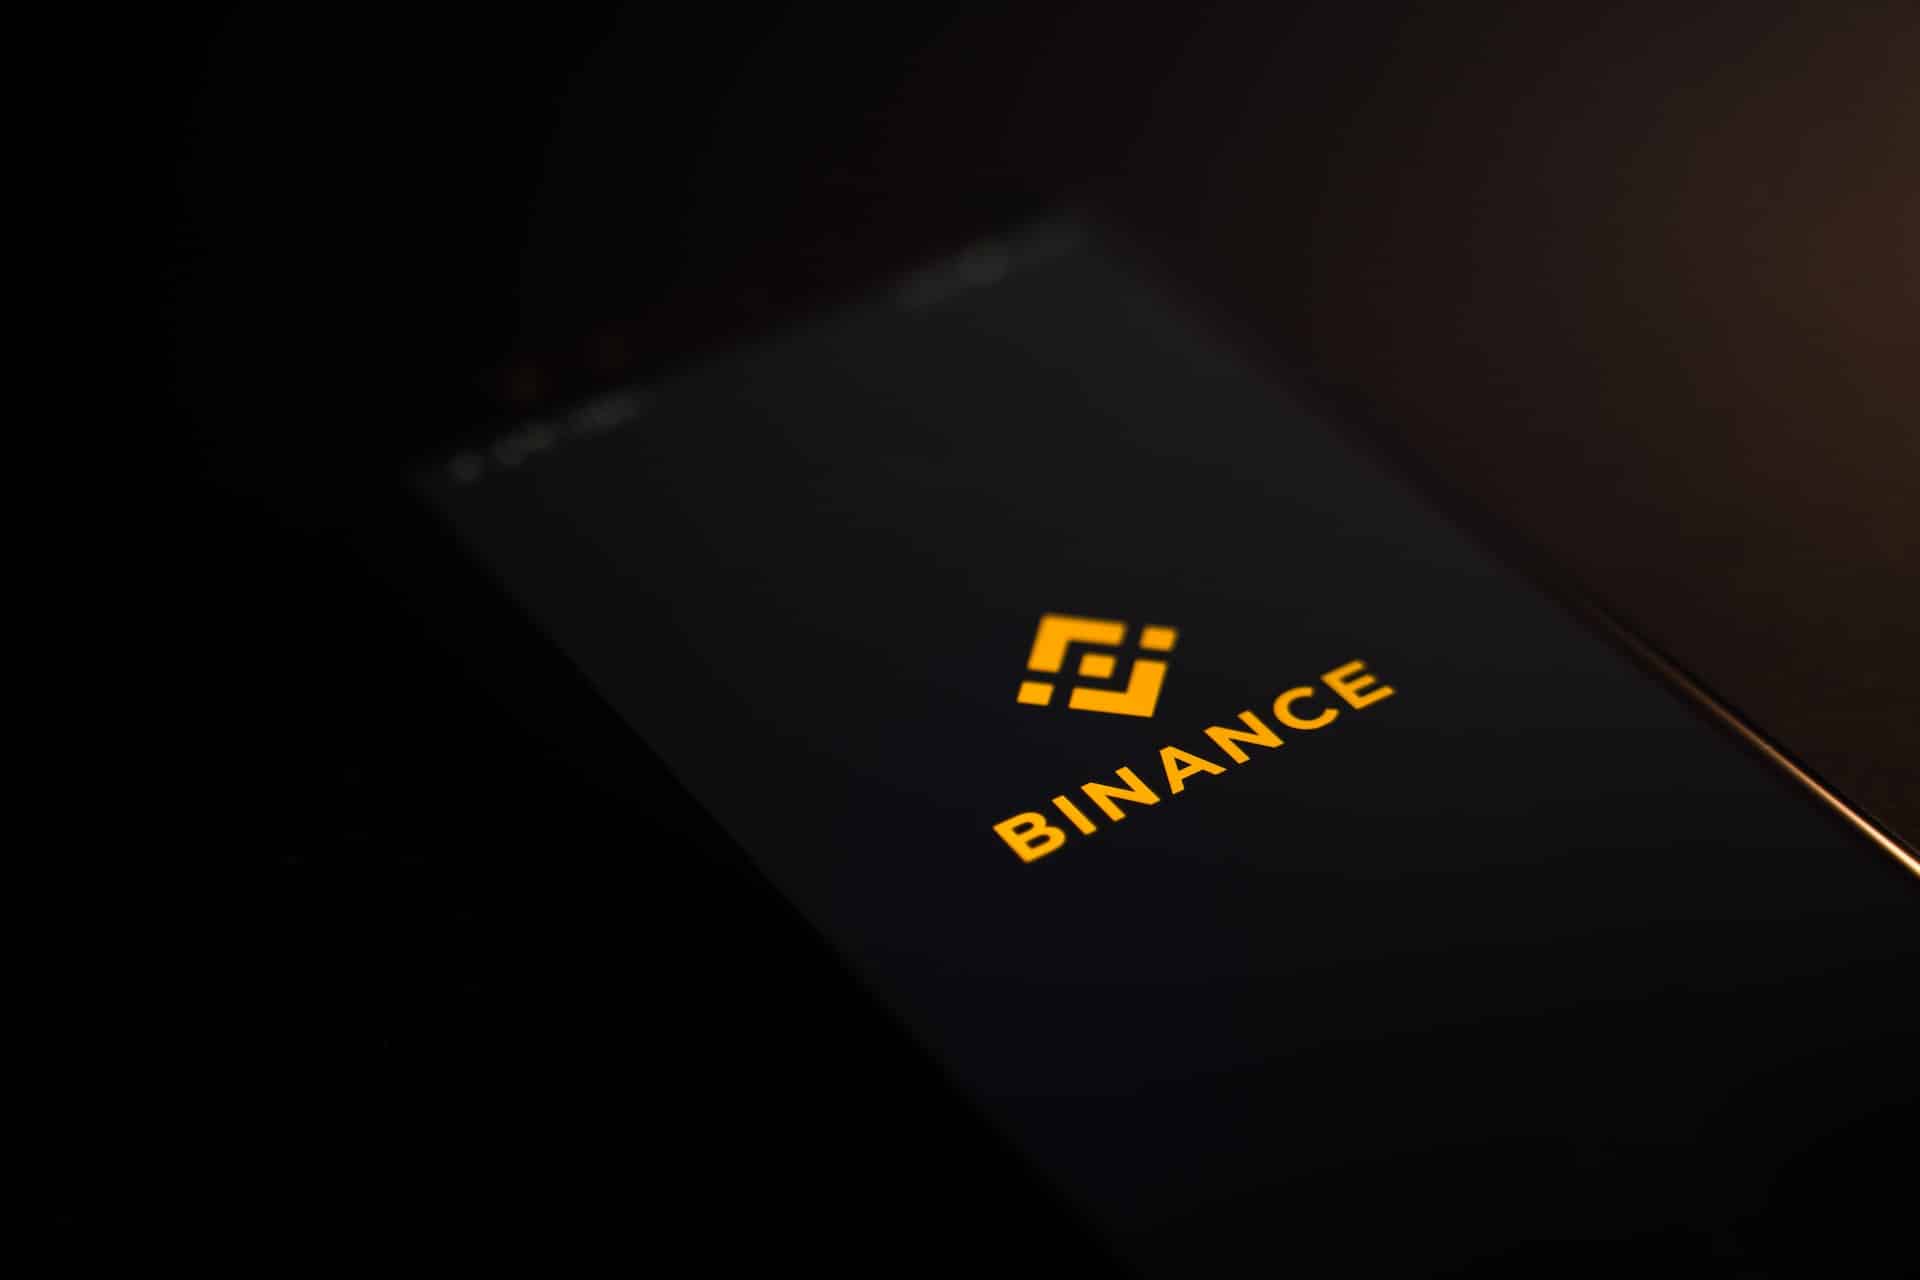 Binance mobile logo on a phone screen